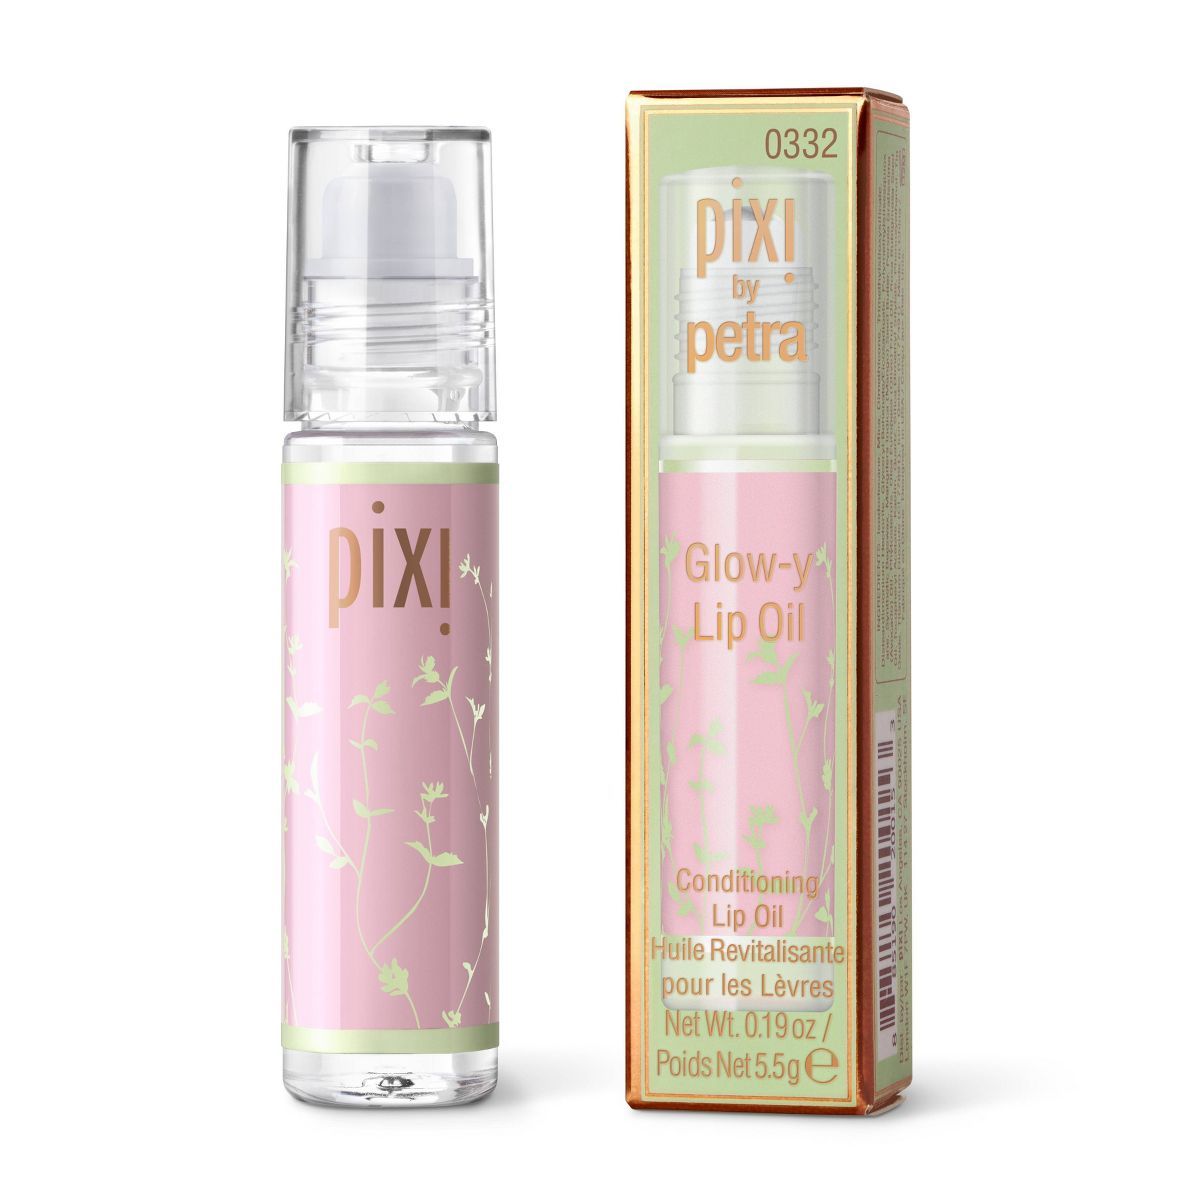 Pixi Glow-y Lip Oil - Mint-y - 0.19oz | Target